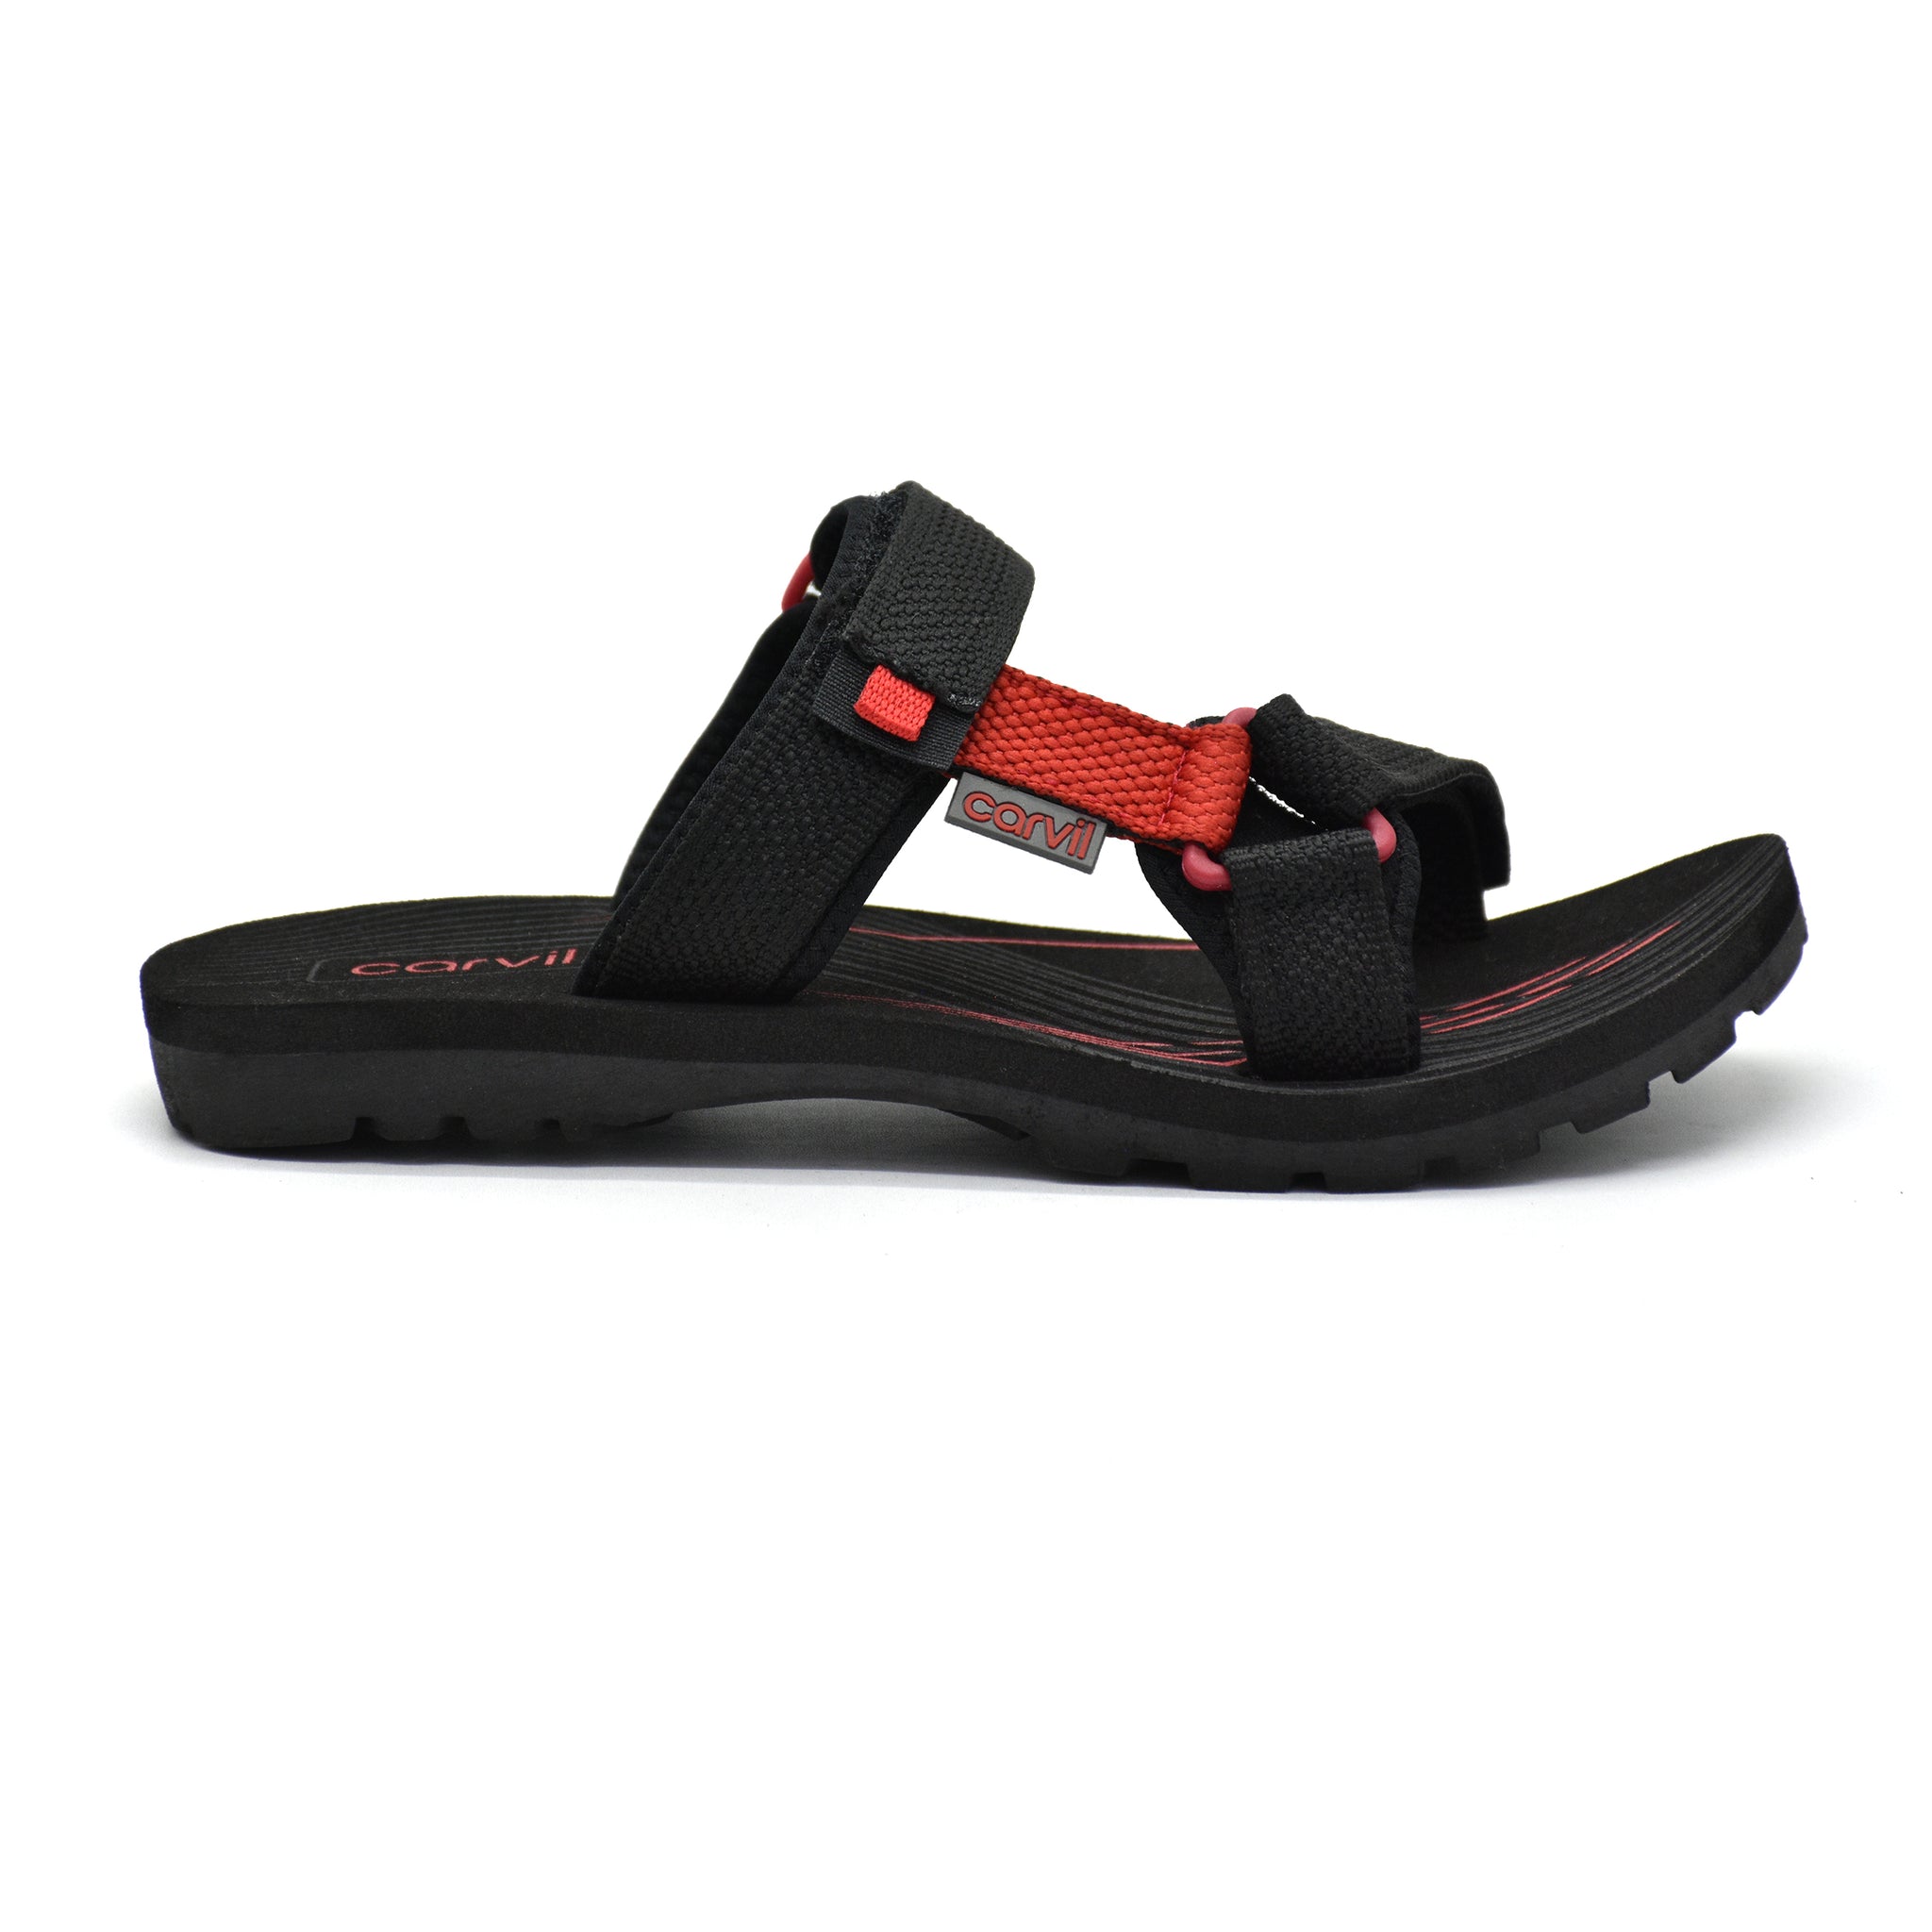 Carvil Sandal Spons Pria SPEXTRA-S14 M BLACK/RED